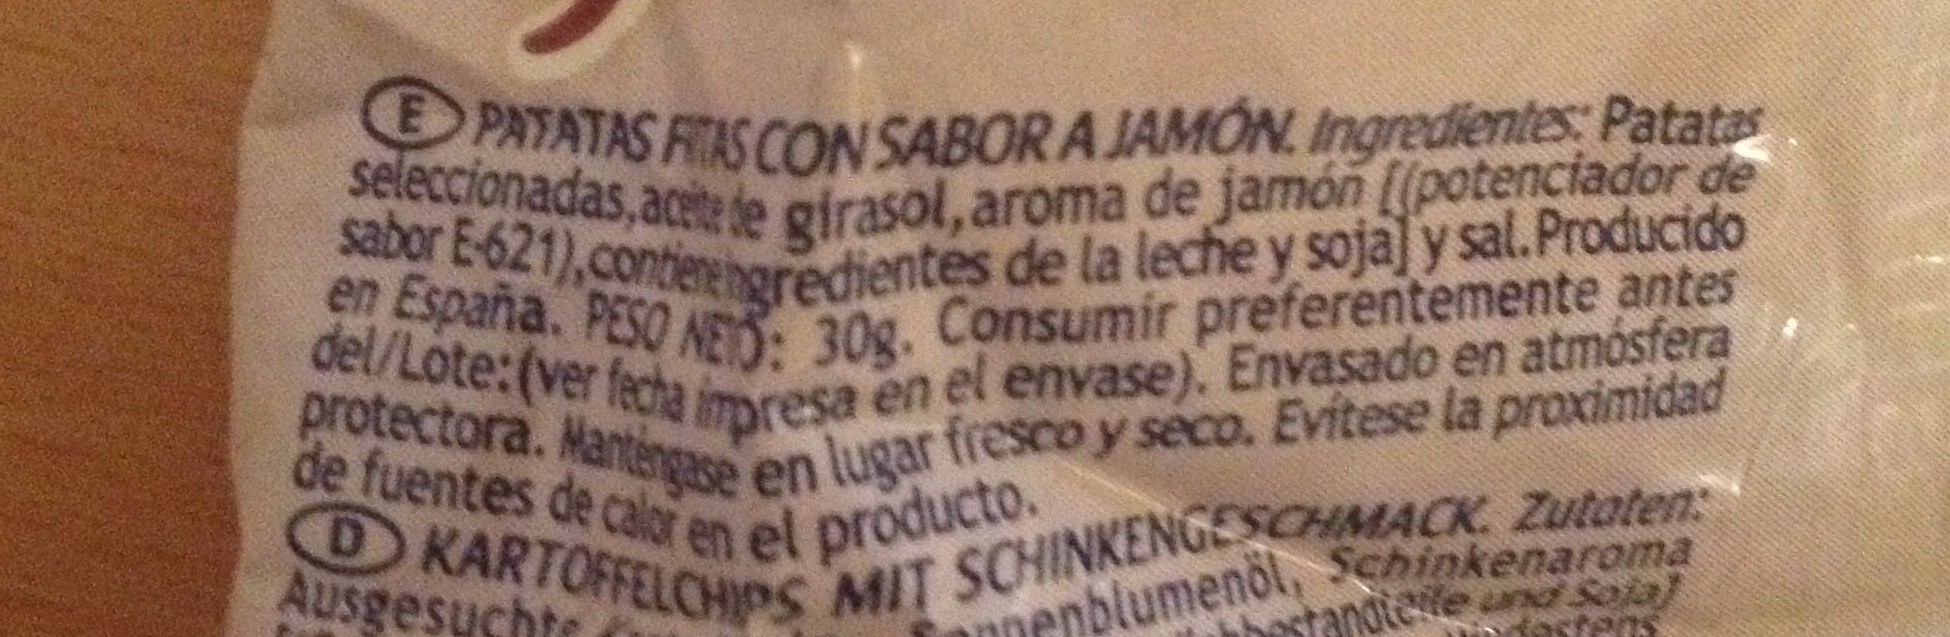 Patatas Artesanales Jamón - Ingredients - es